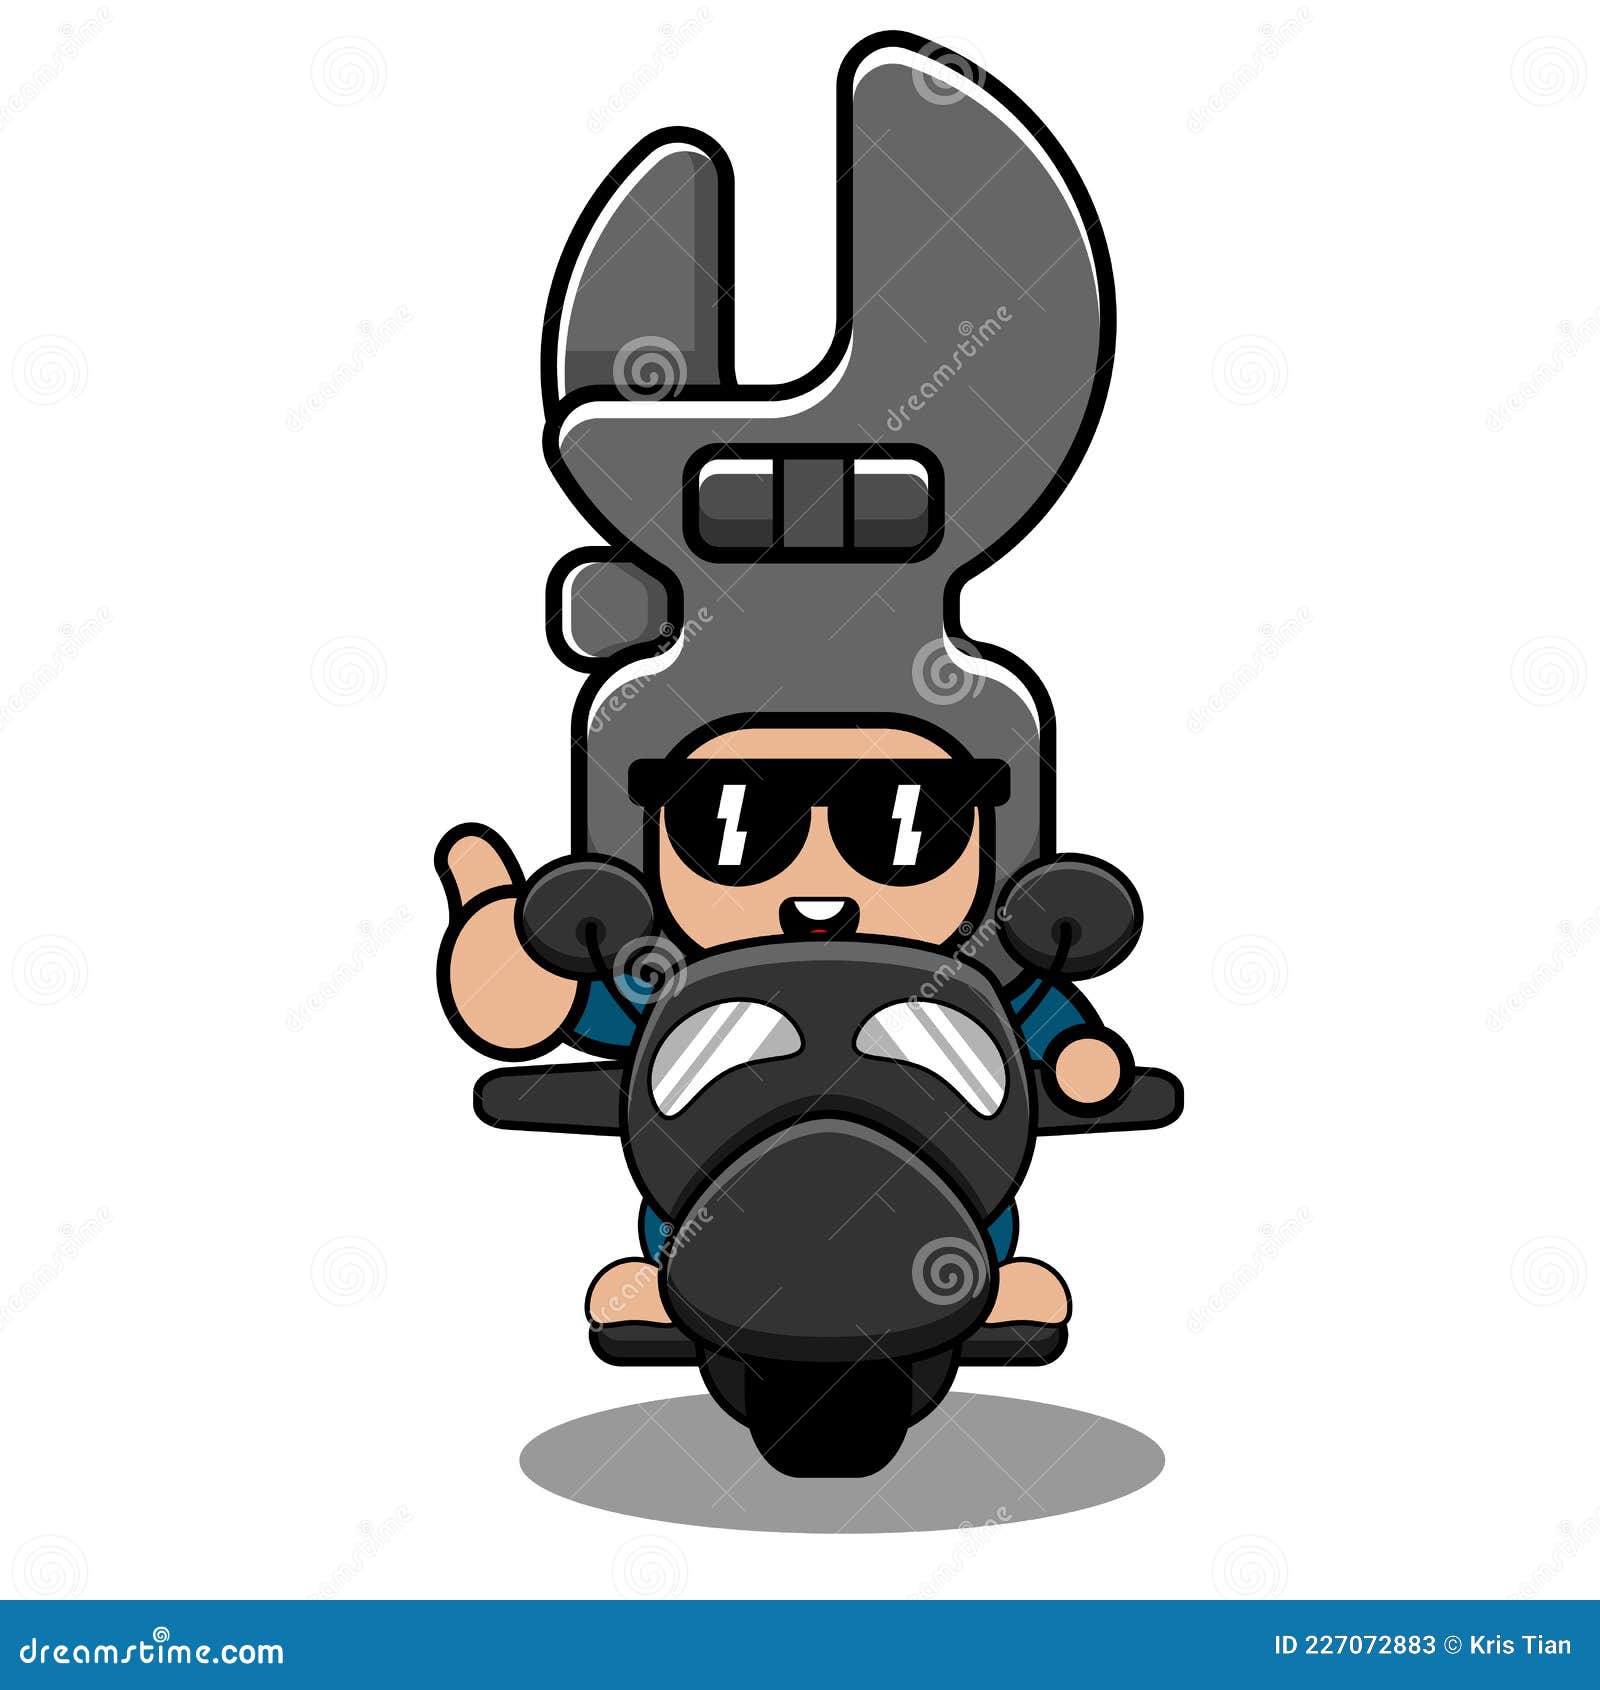 Ilustración divertida del diseño del doodle de la moto